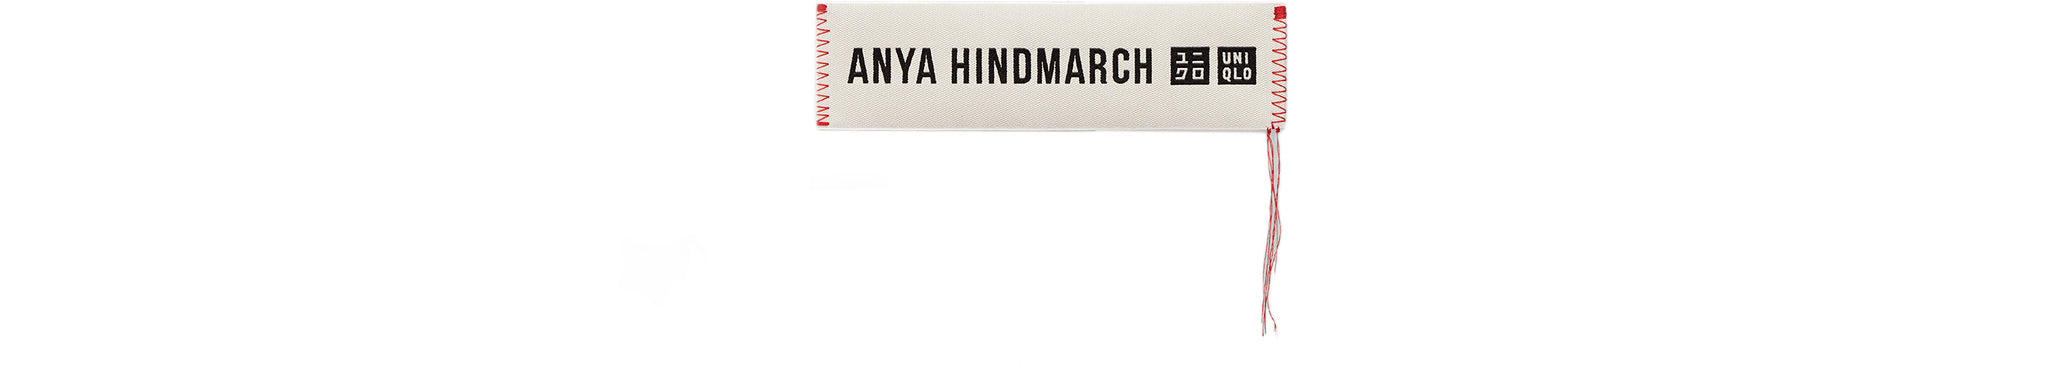 Anya Hindmarch US